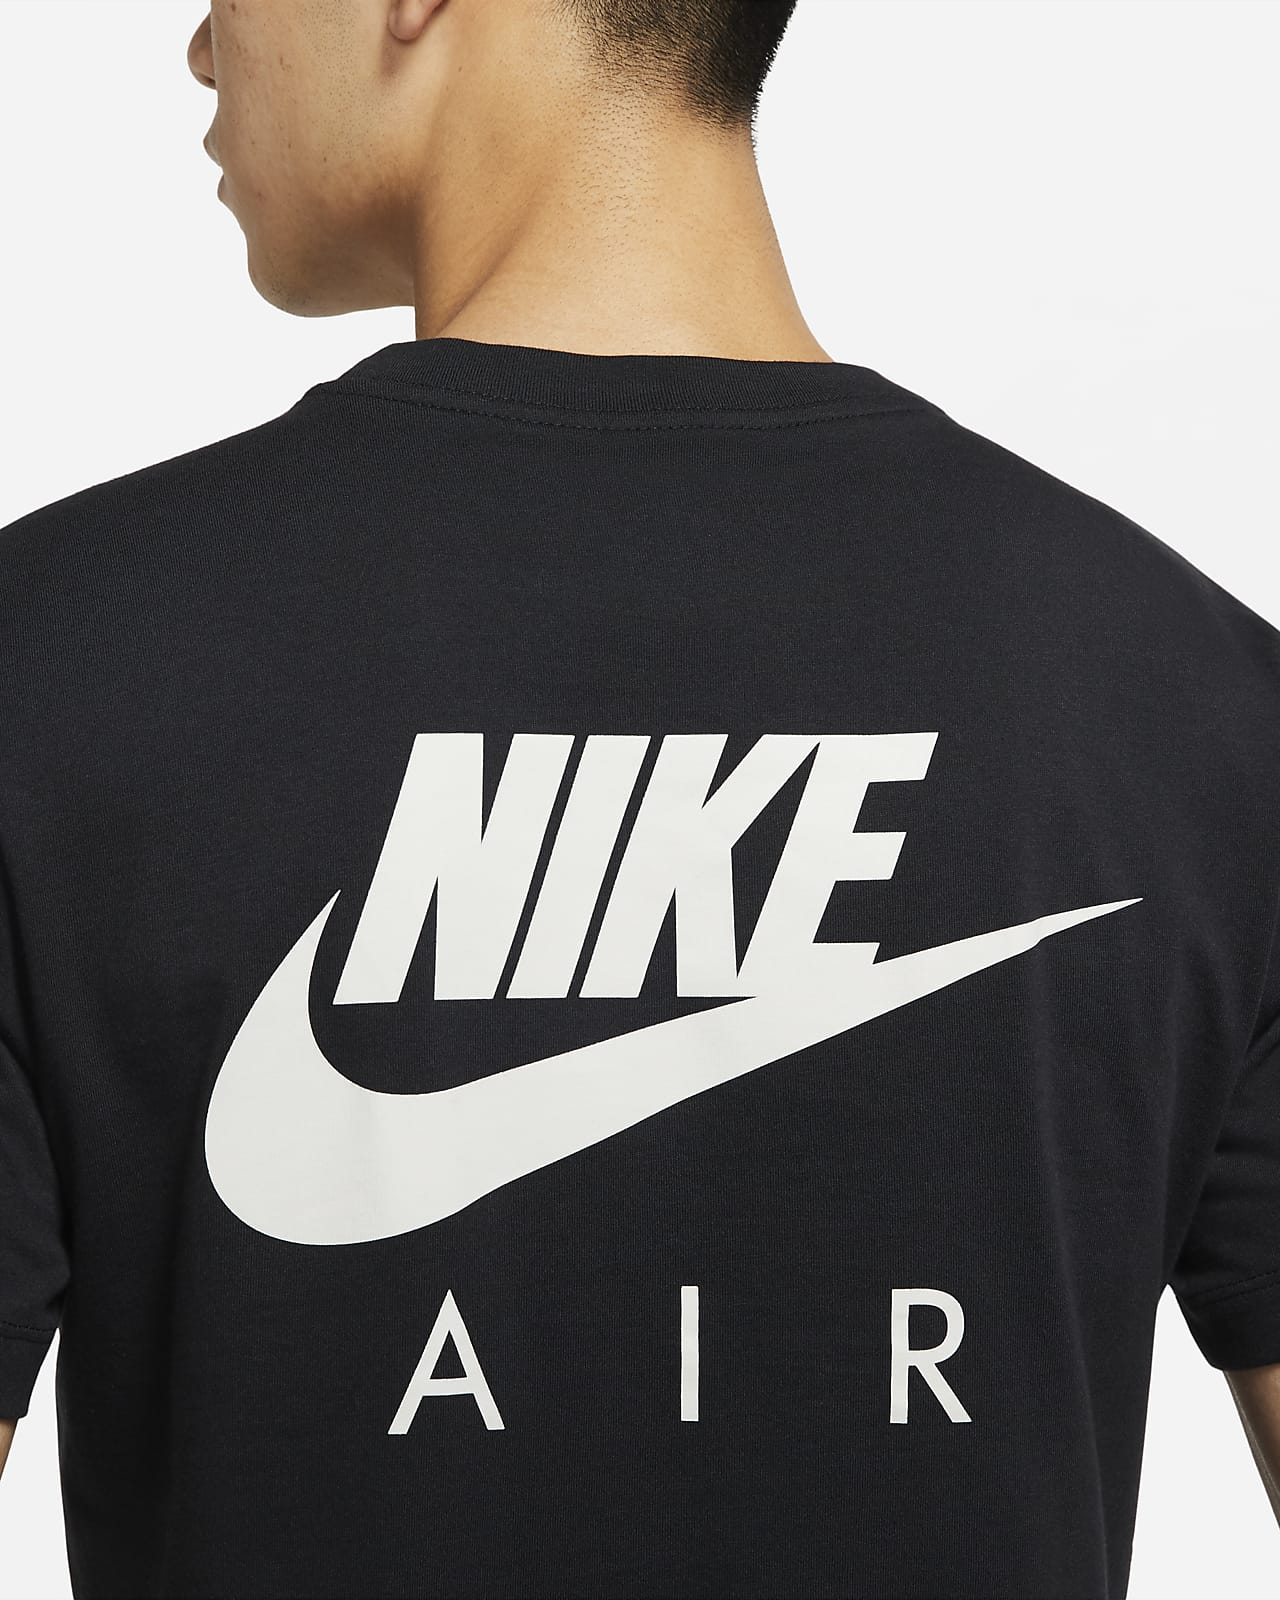 Nike Air Men's T-Shirt. PH